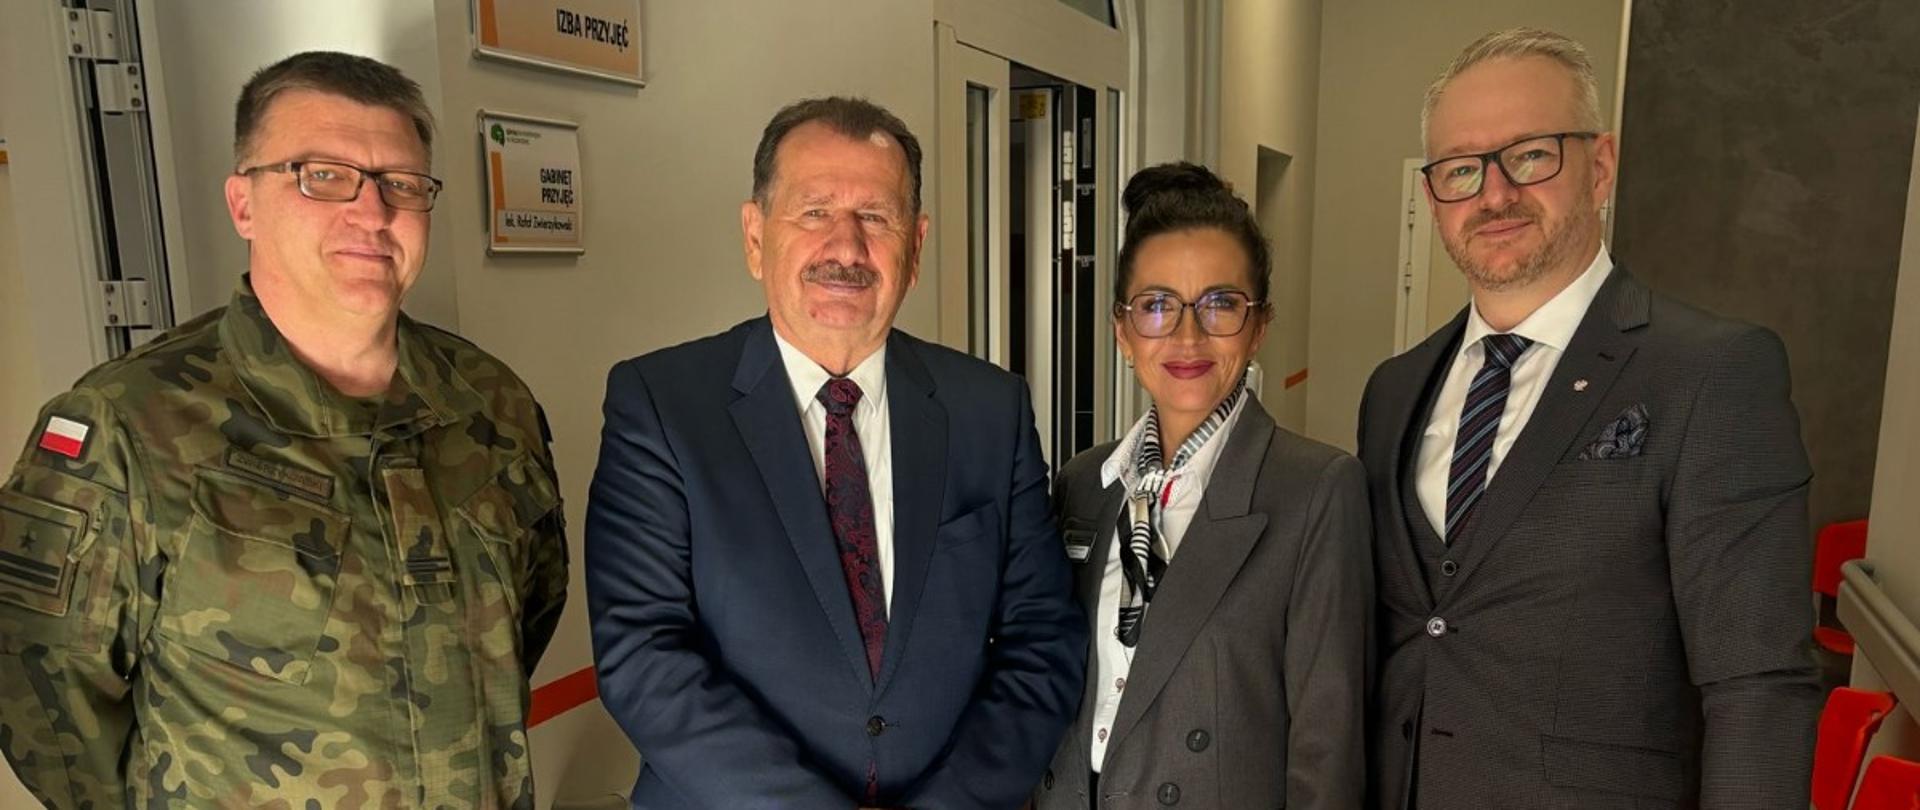 Wiceminister Aktywów Państwowych oraz Wojewoda odwiedzili Szpital Psychiatryczny w Węgorzewie